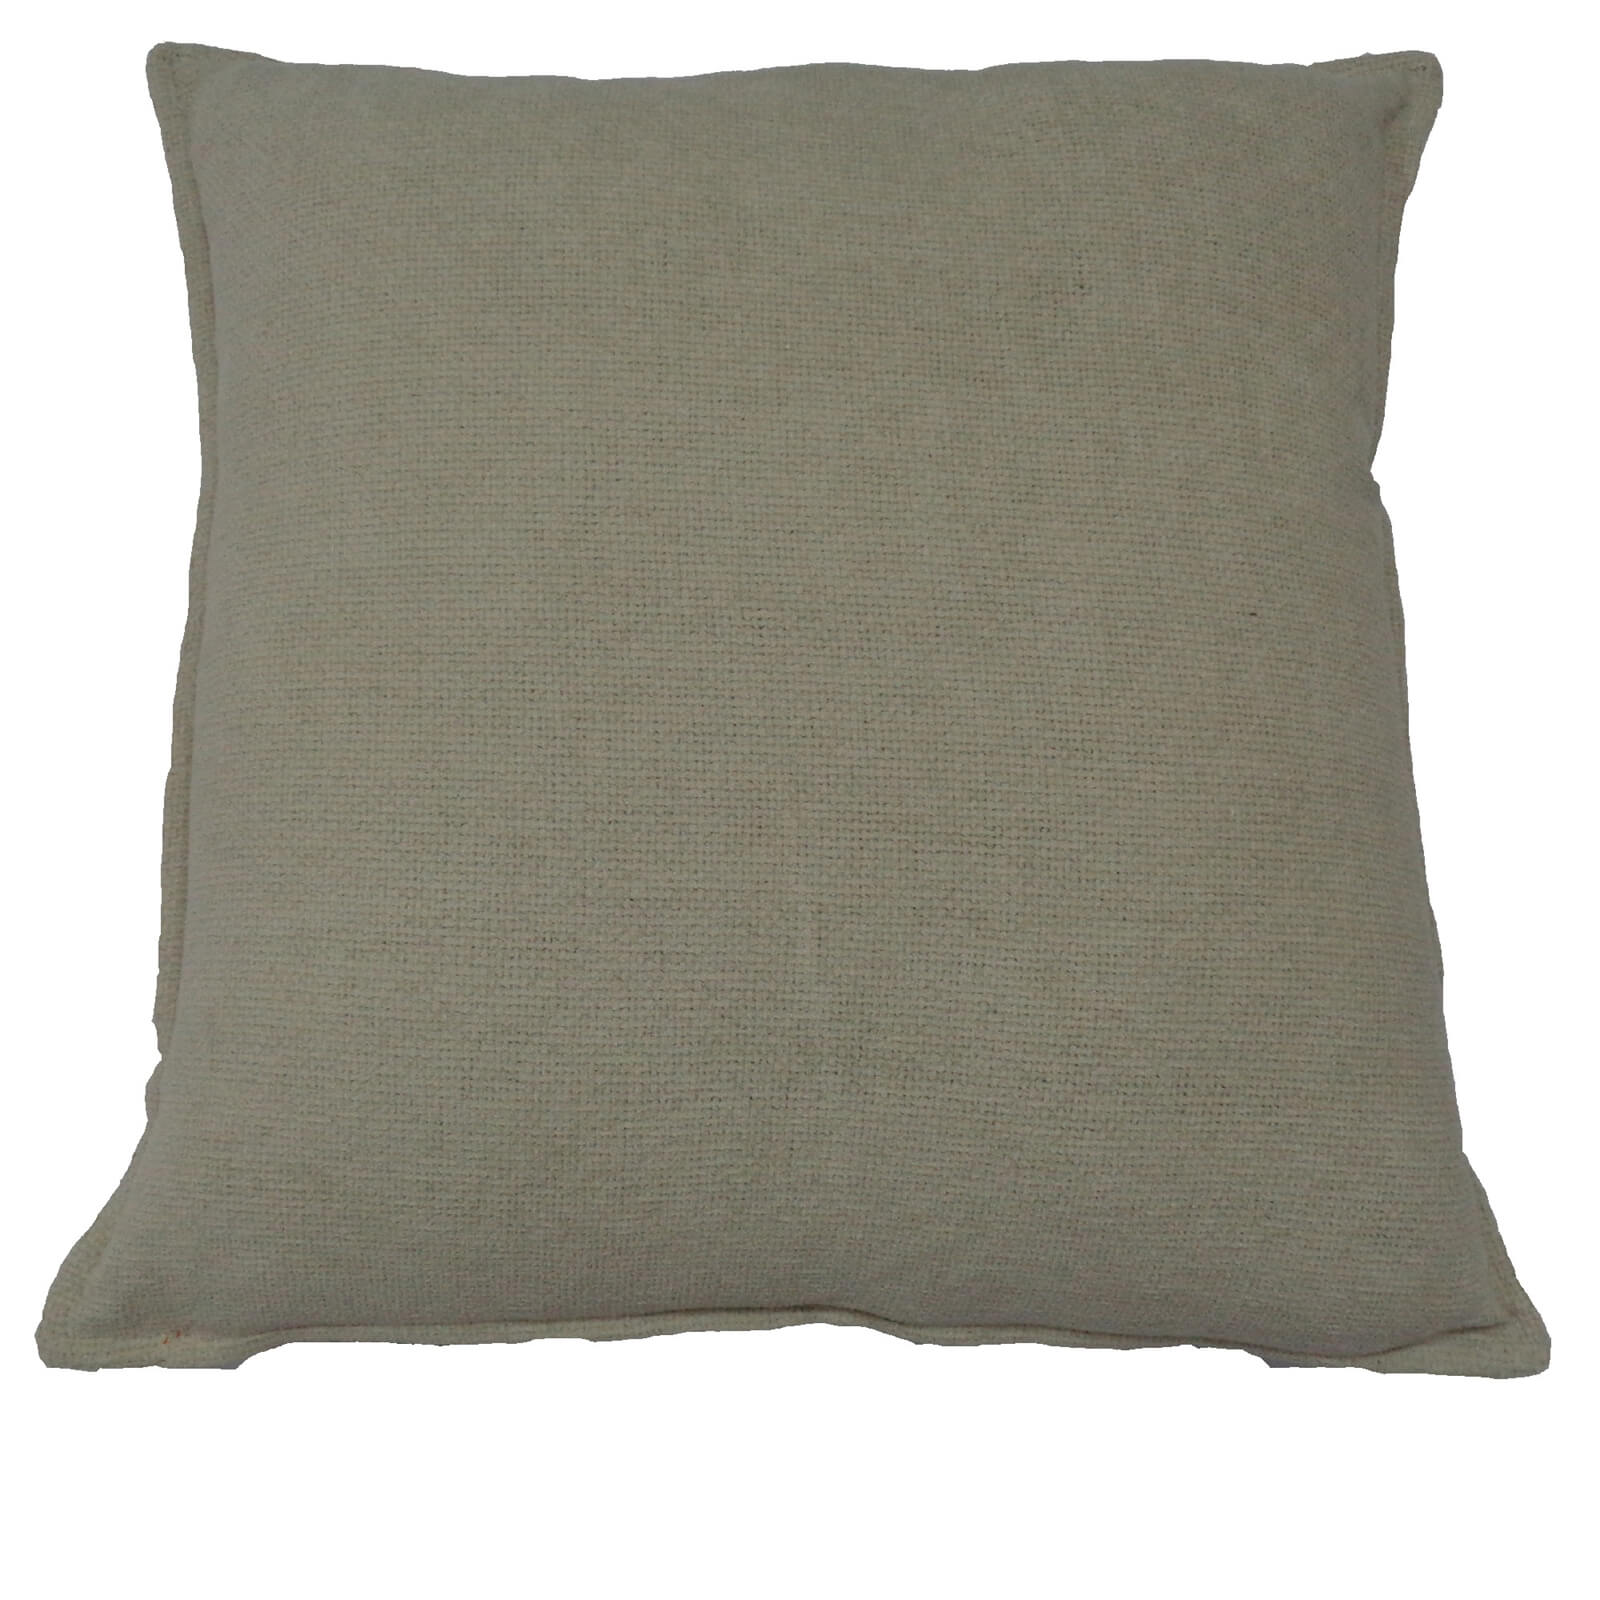 Soft Chenille Cushion - Oatmeal - 58 x 58cm